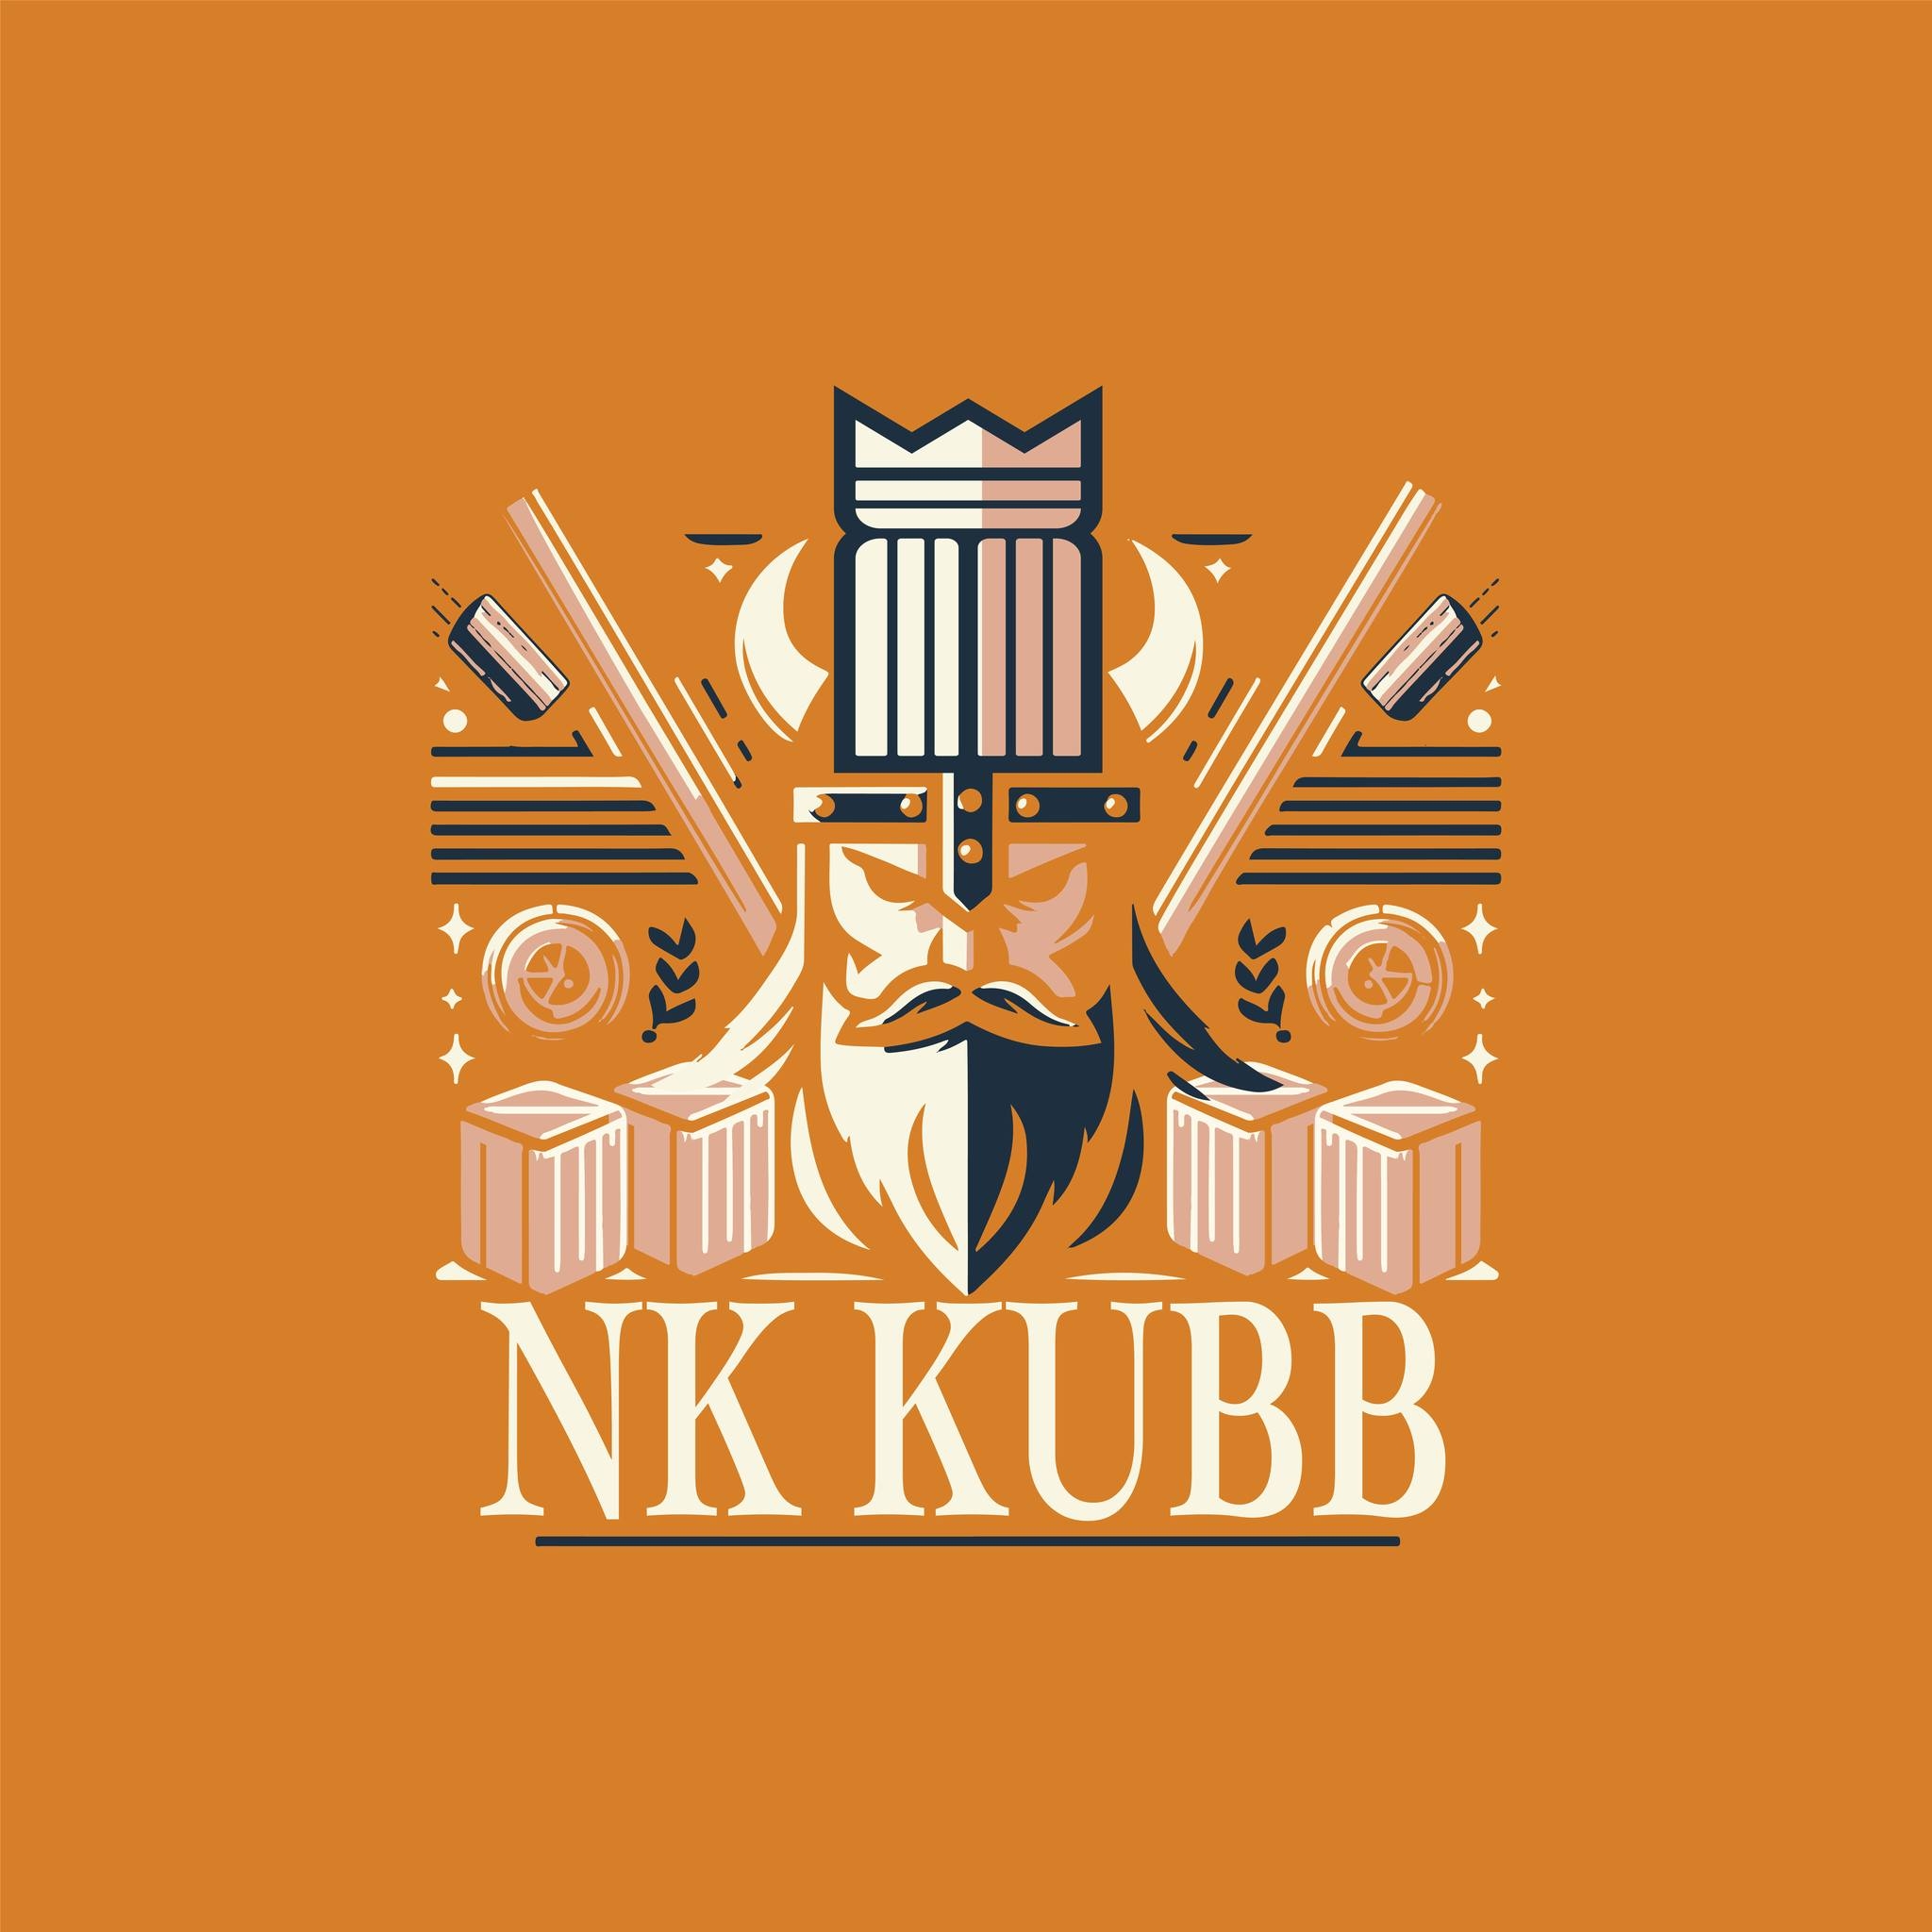 NK Kubb